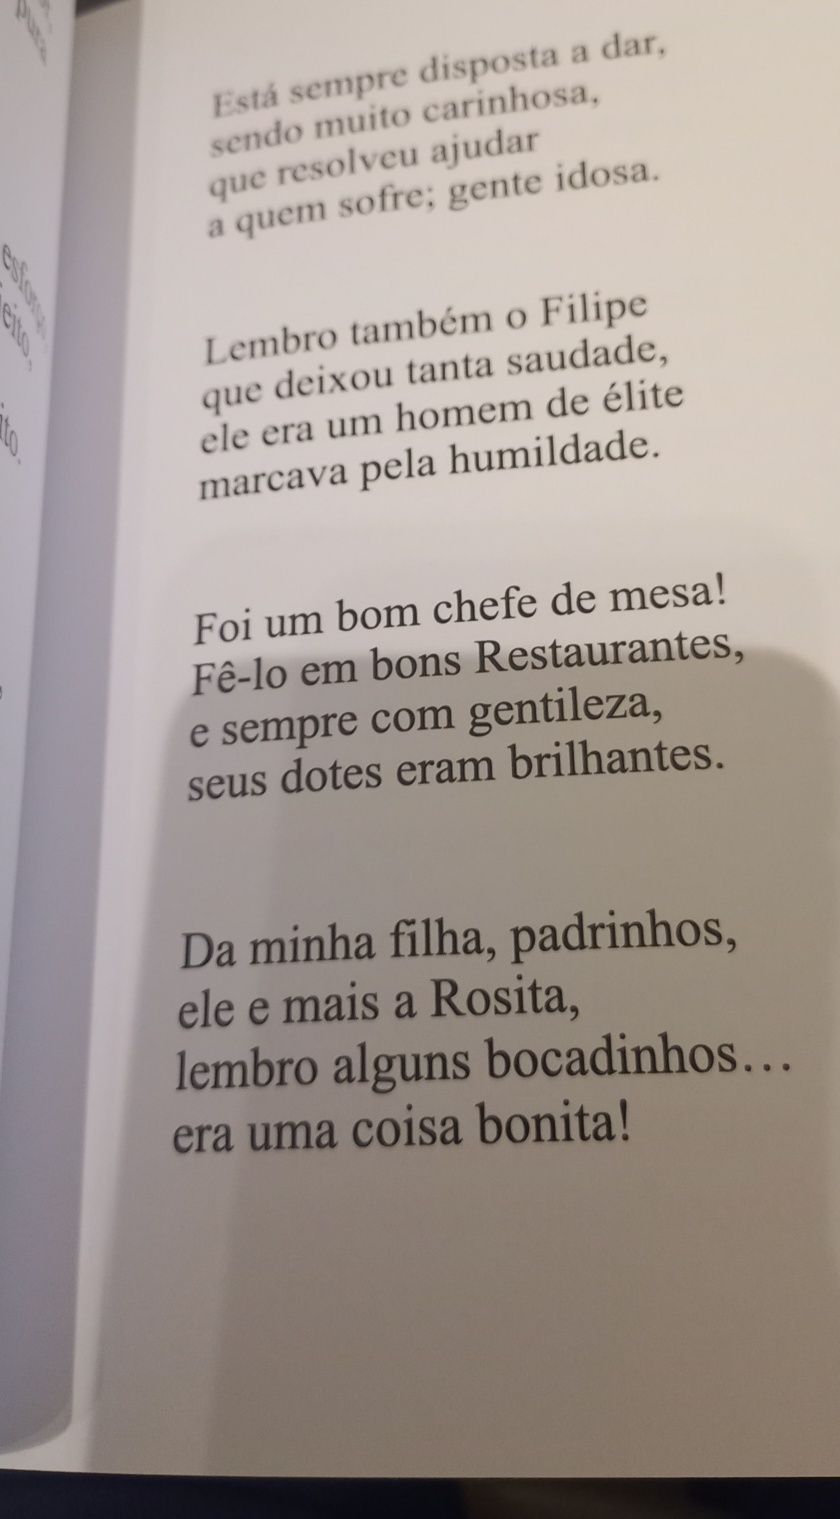 Livro "Quadras e Quadros da Minha Vida" Jose Amorim. PORTES GRÁTIS.